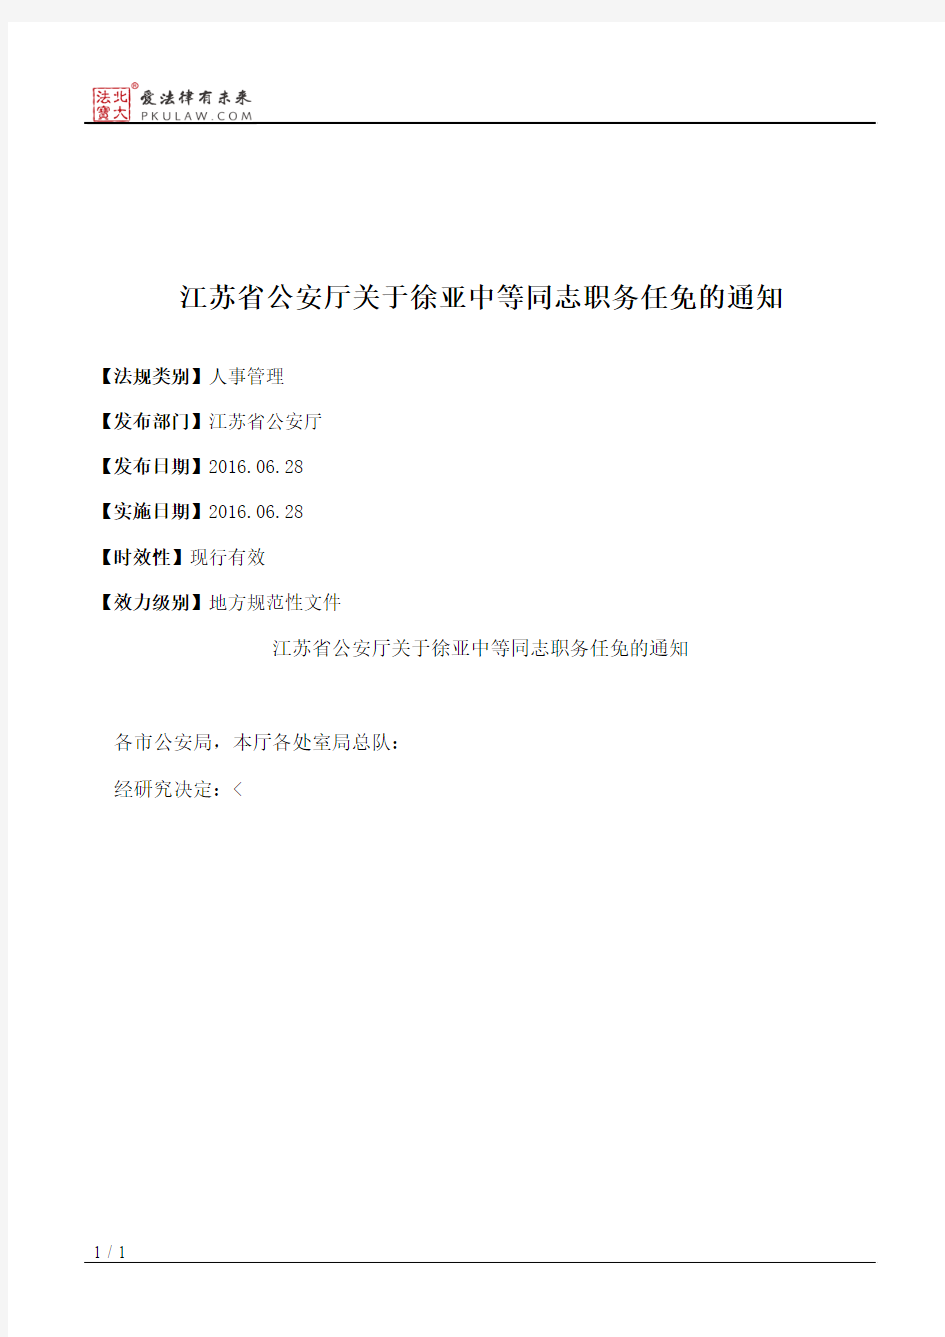 江苏省公安厅关于徐亚中等同志职务任免的通知